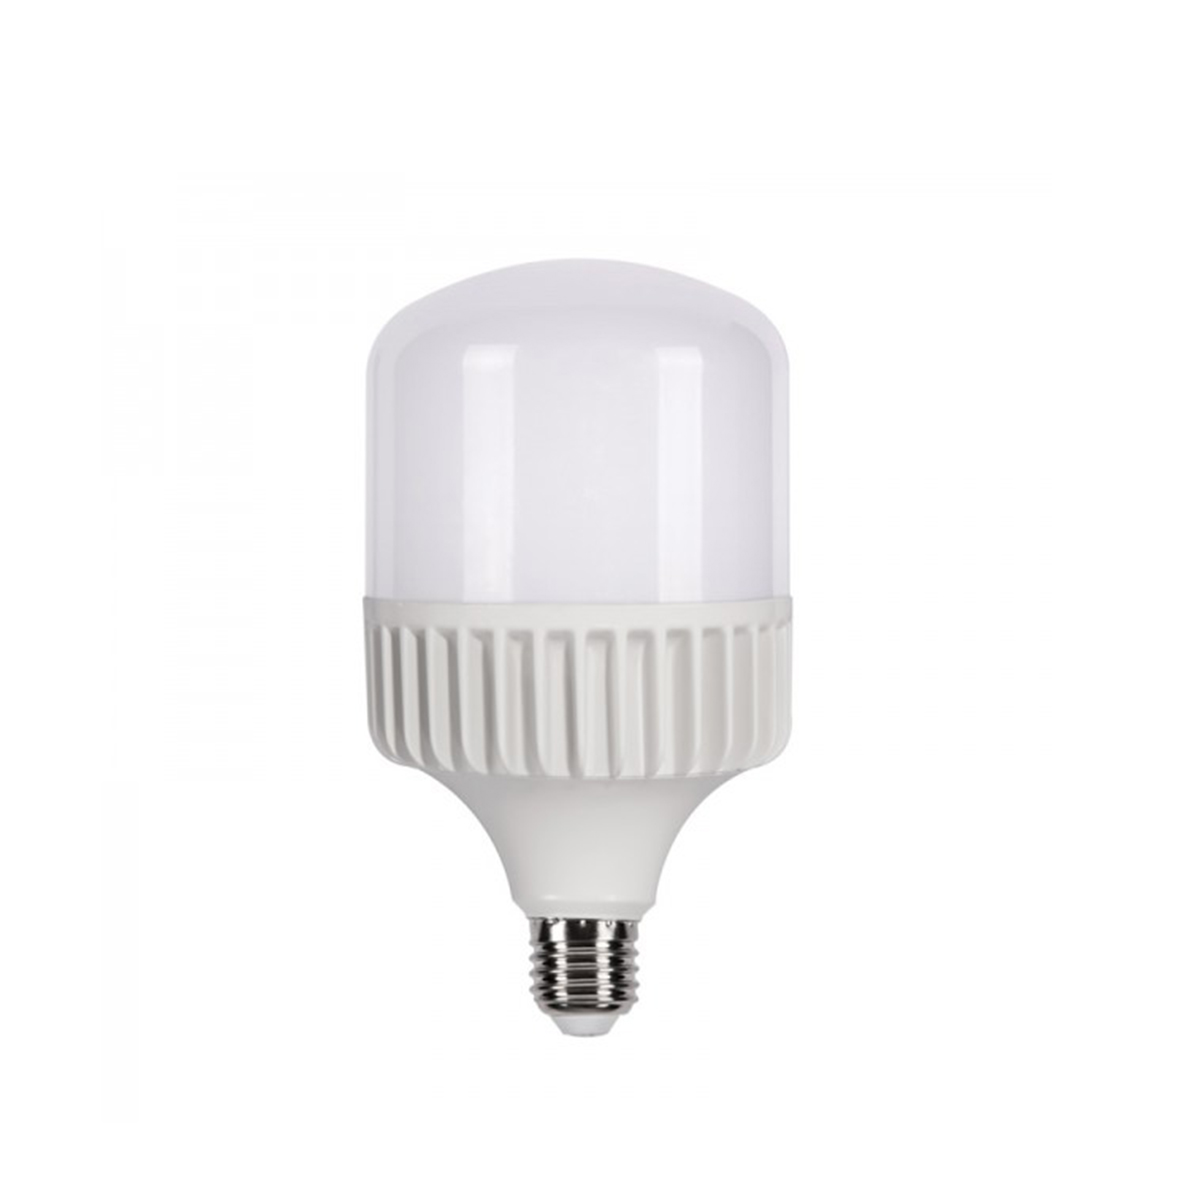 خرید و پخش عمده لامپ LED ۵٠وات